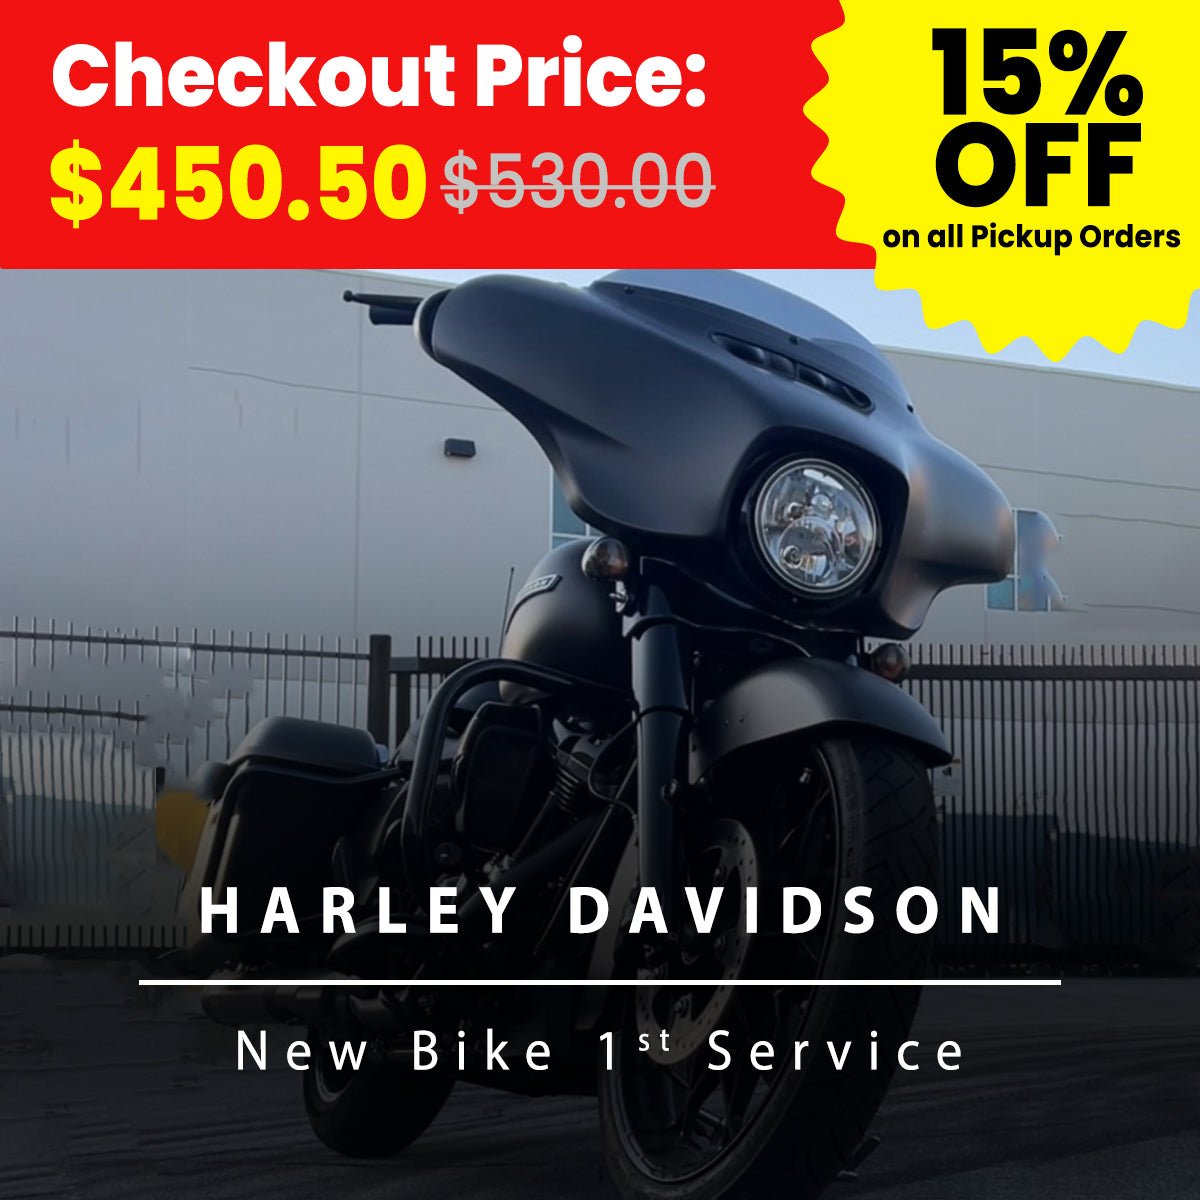 Motorcycle Harley Davidson New Bike 1st Service-Service